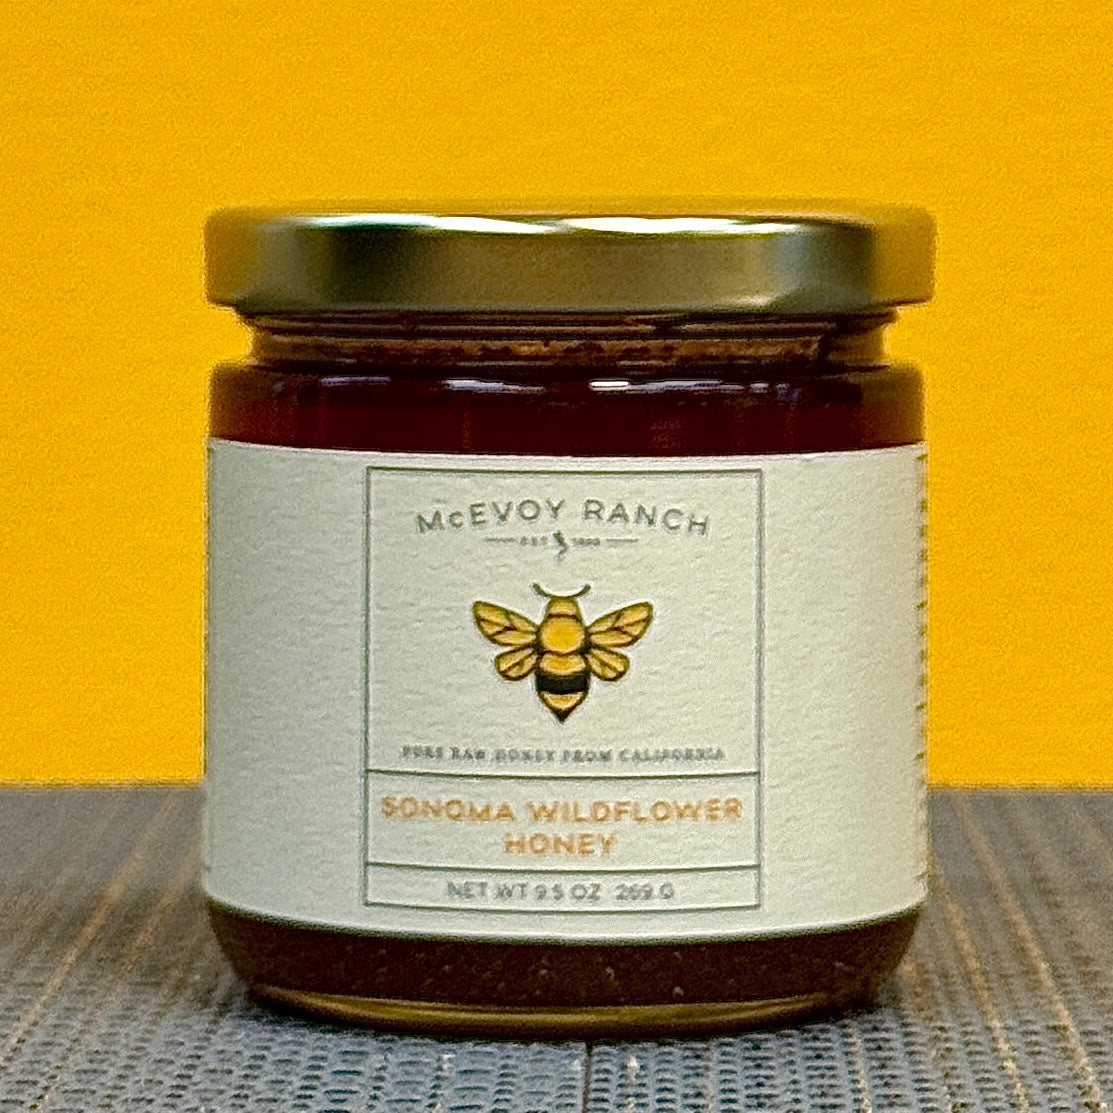 McEvoy Ranch Sonoma Wildflower Honey